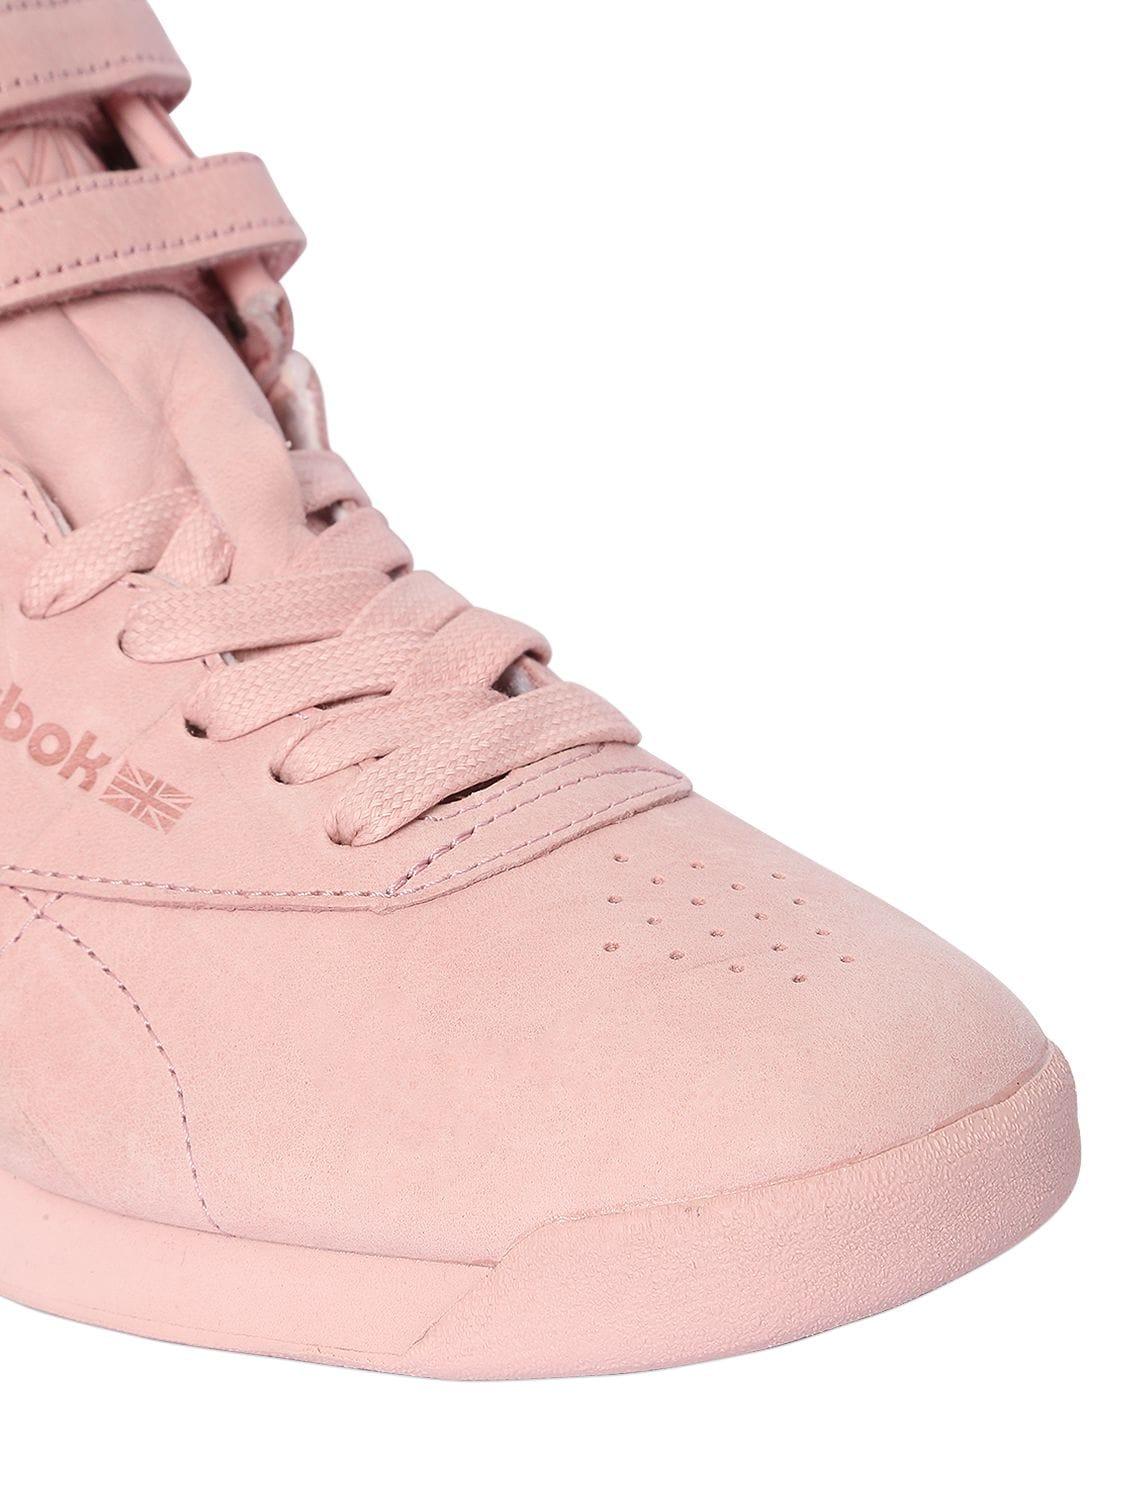 Reebok Freestyle Nubuck Top Sneakers Pink | Lyst